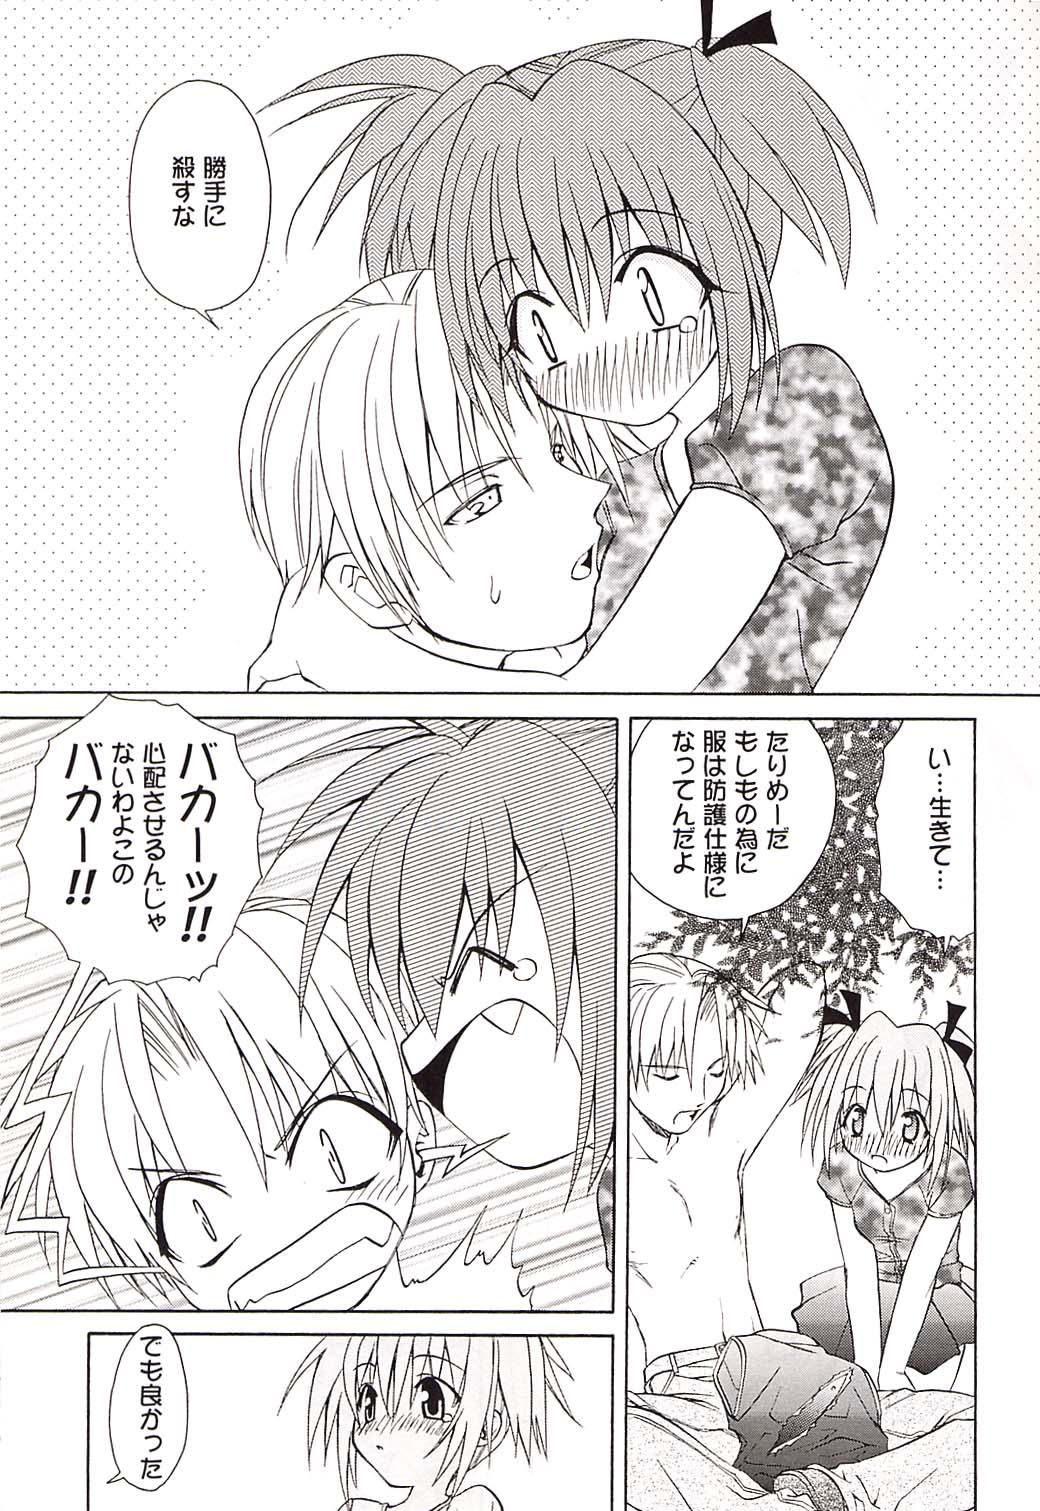 Safado Strawberry sex - Tokyo mew mew Wank - Page 12